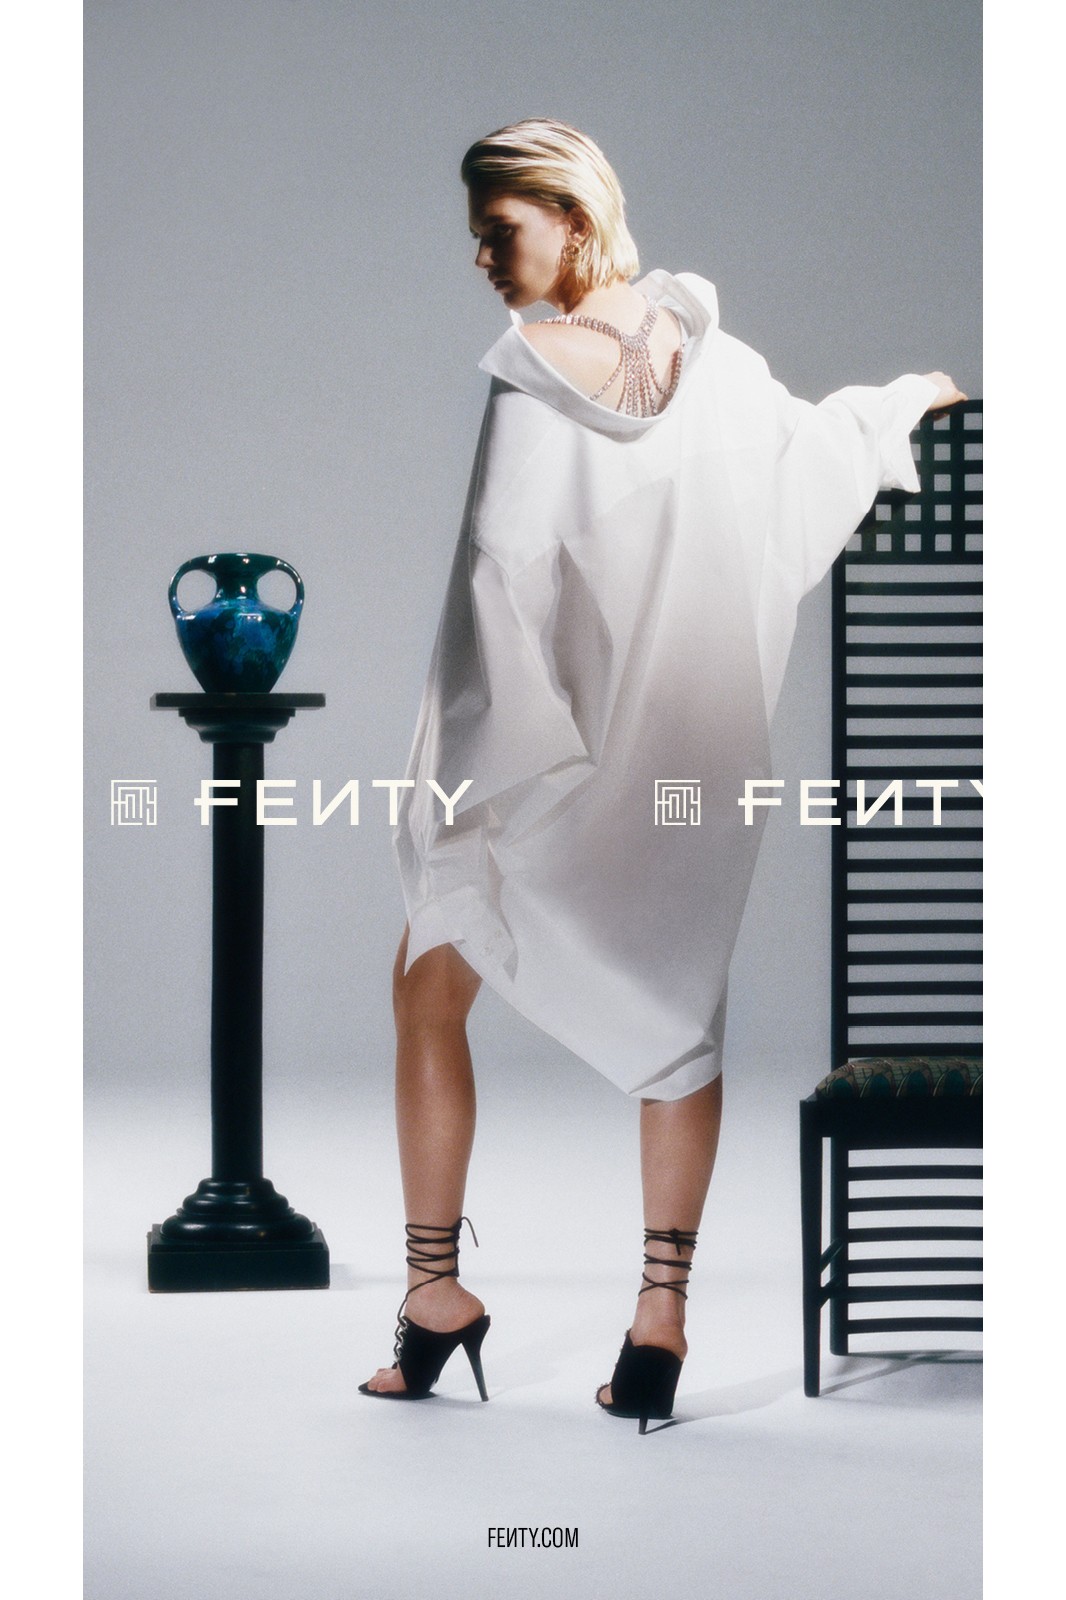 Рианна выпустила кампанию декабрьской коллекции Fenty (фото 1)